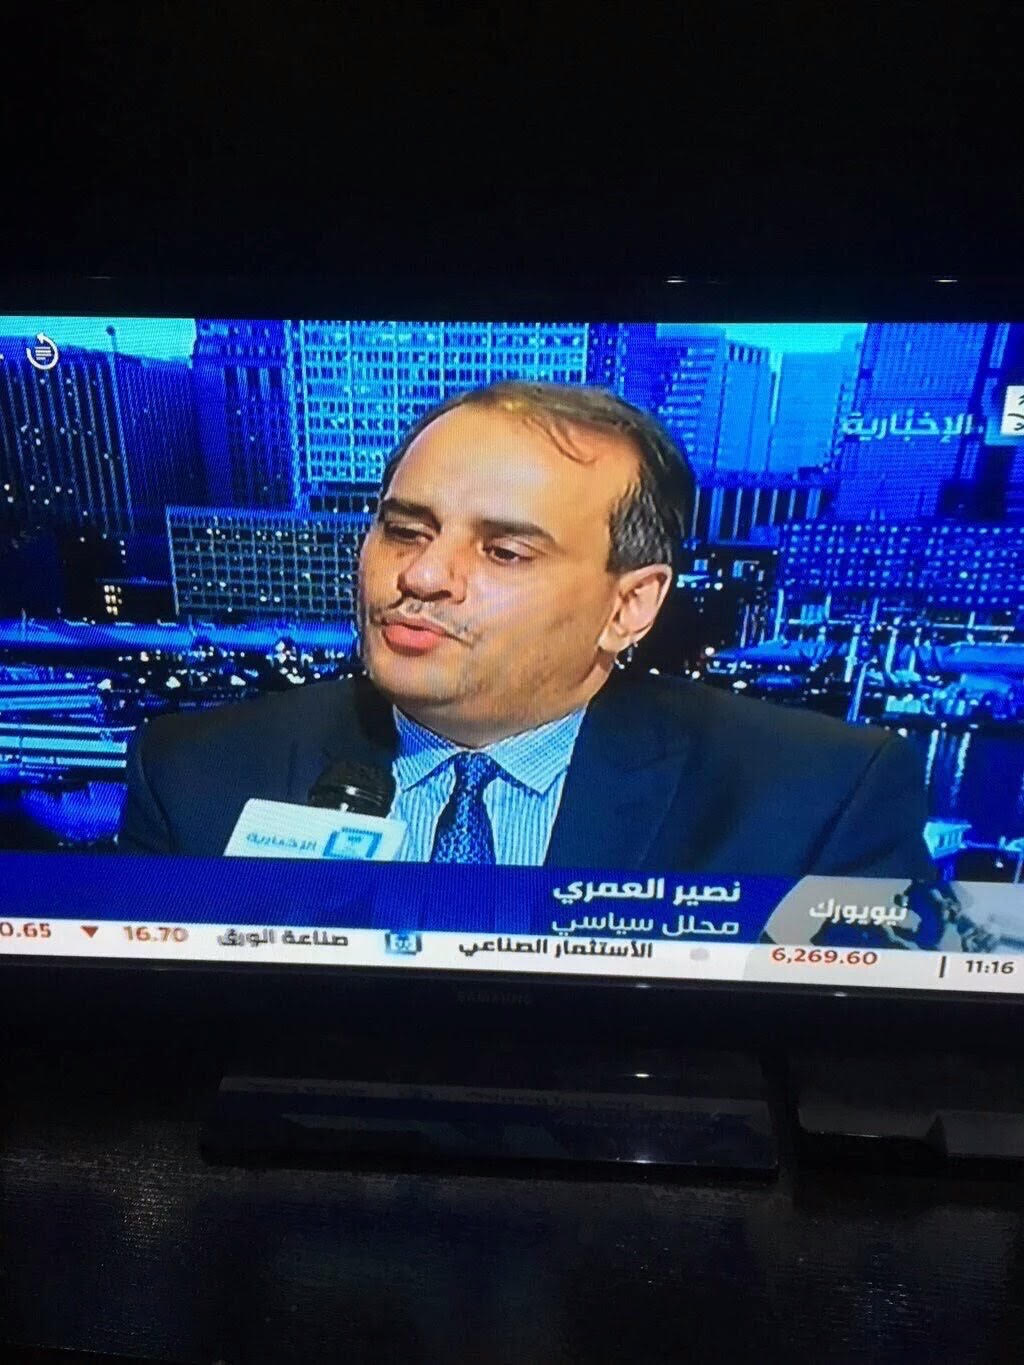 تحقيق موسع وإيقاف واستغناء بسبب استضافة نصير العمري على قناة “الإخبارية”